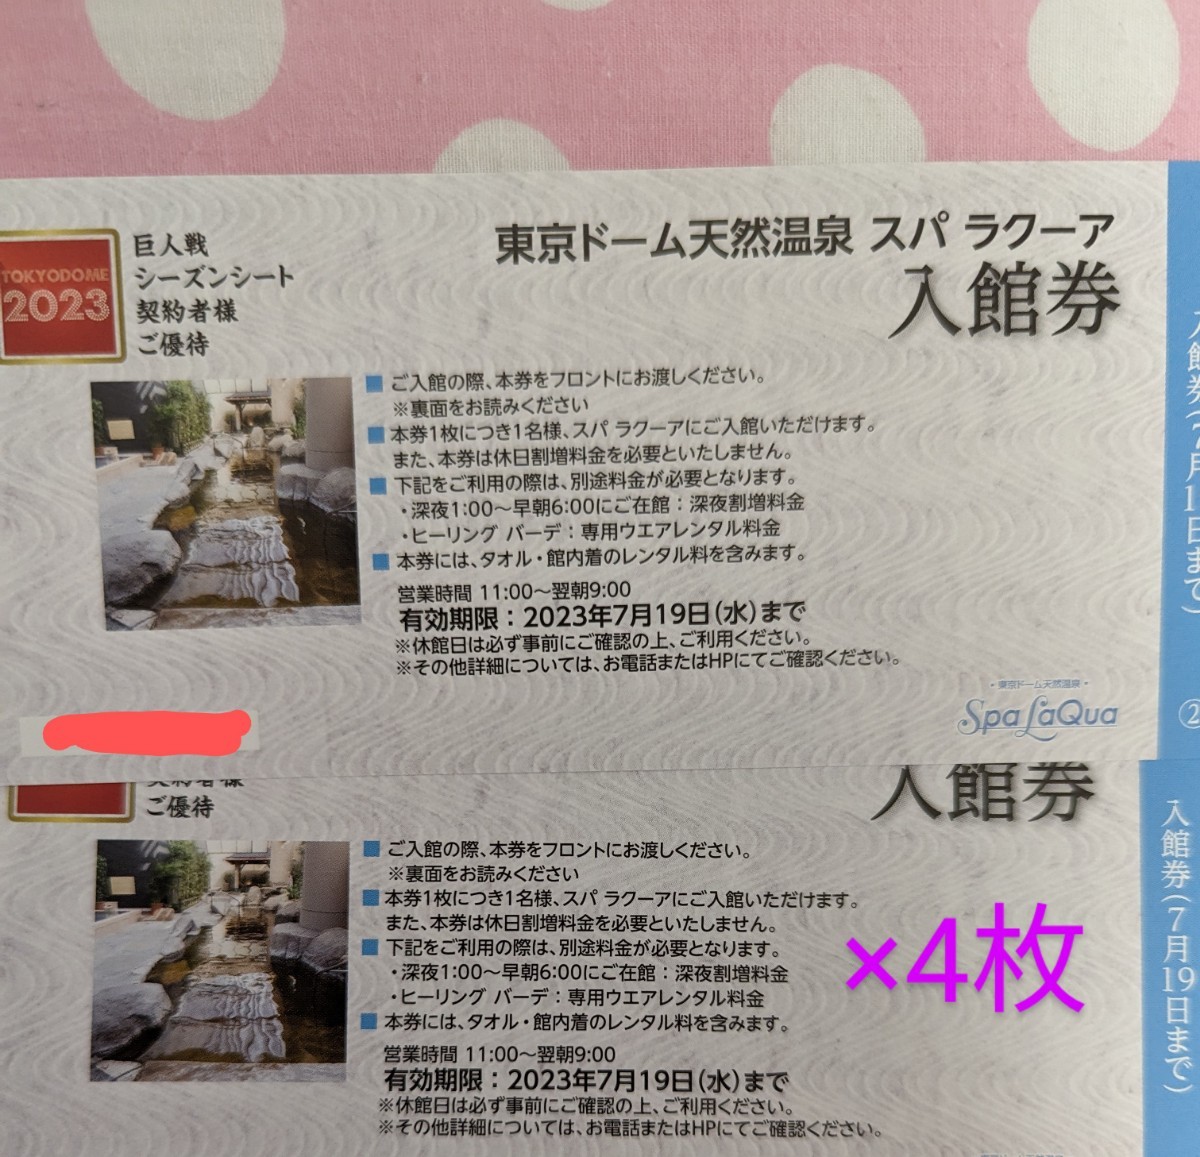 美品 東京ドーム天然温泉 スパラクーア 入館券4枚 割引券9枚のセット 